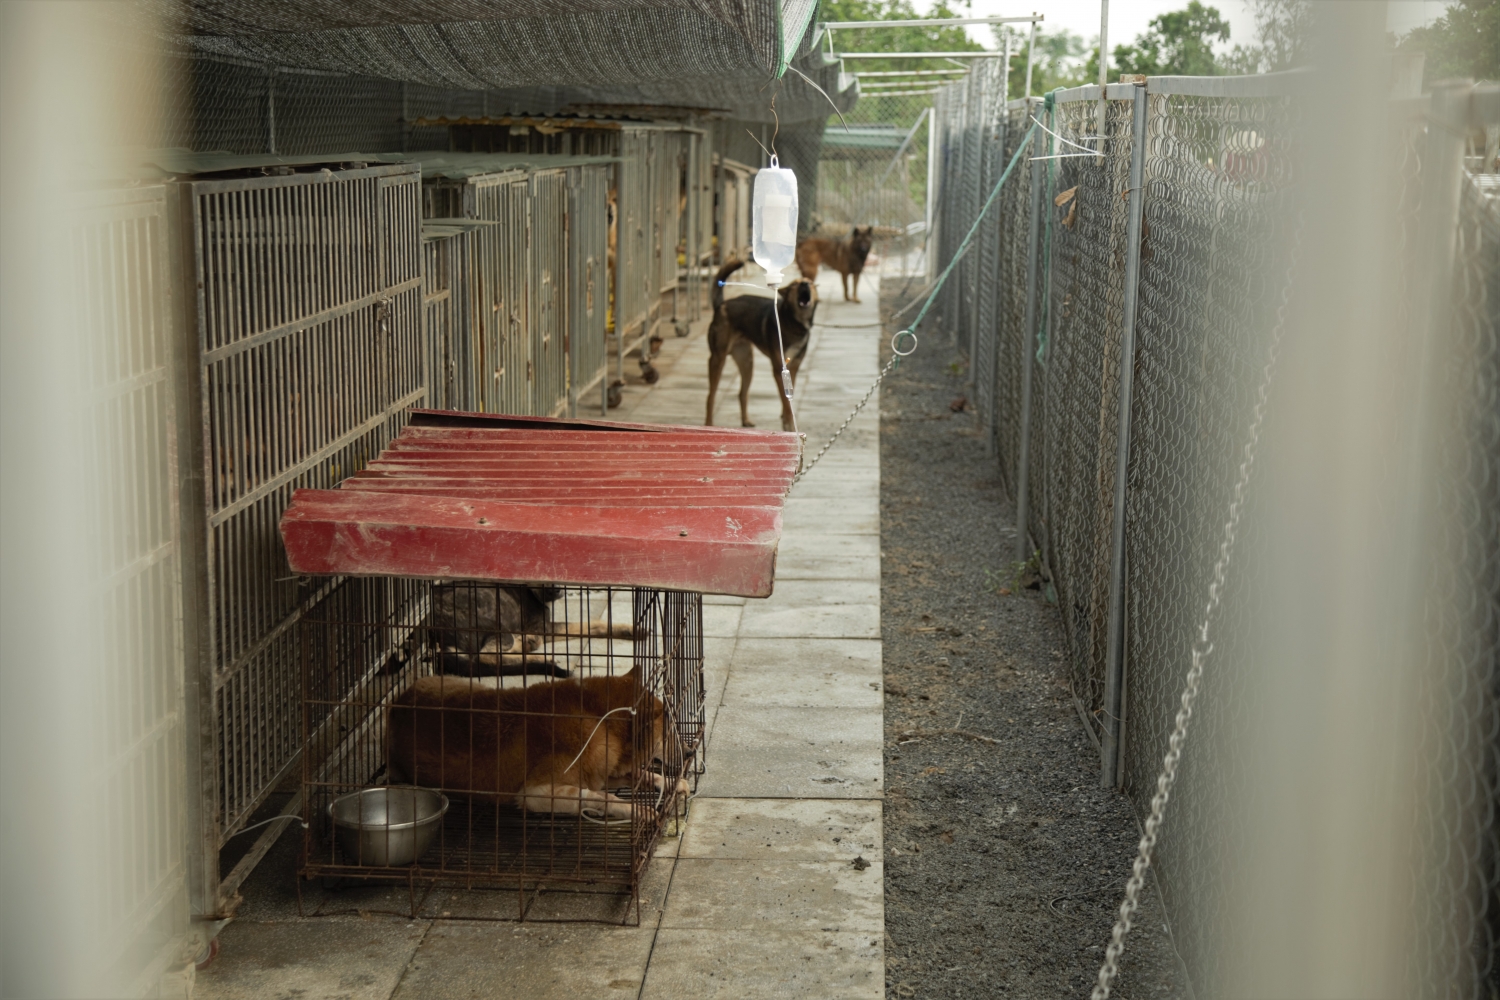 Nhóm cứu hộ Sân nhà nhiều chó: “Hoạt động cứu hộ mà chỉ đi cứu thì như muối bỏ bể...”